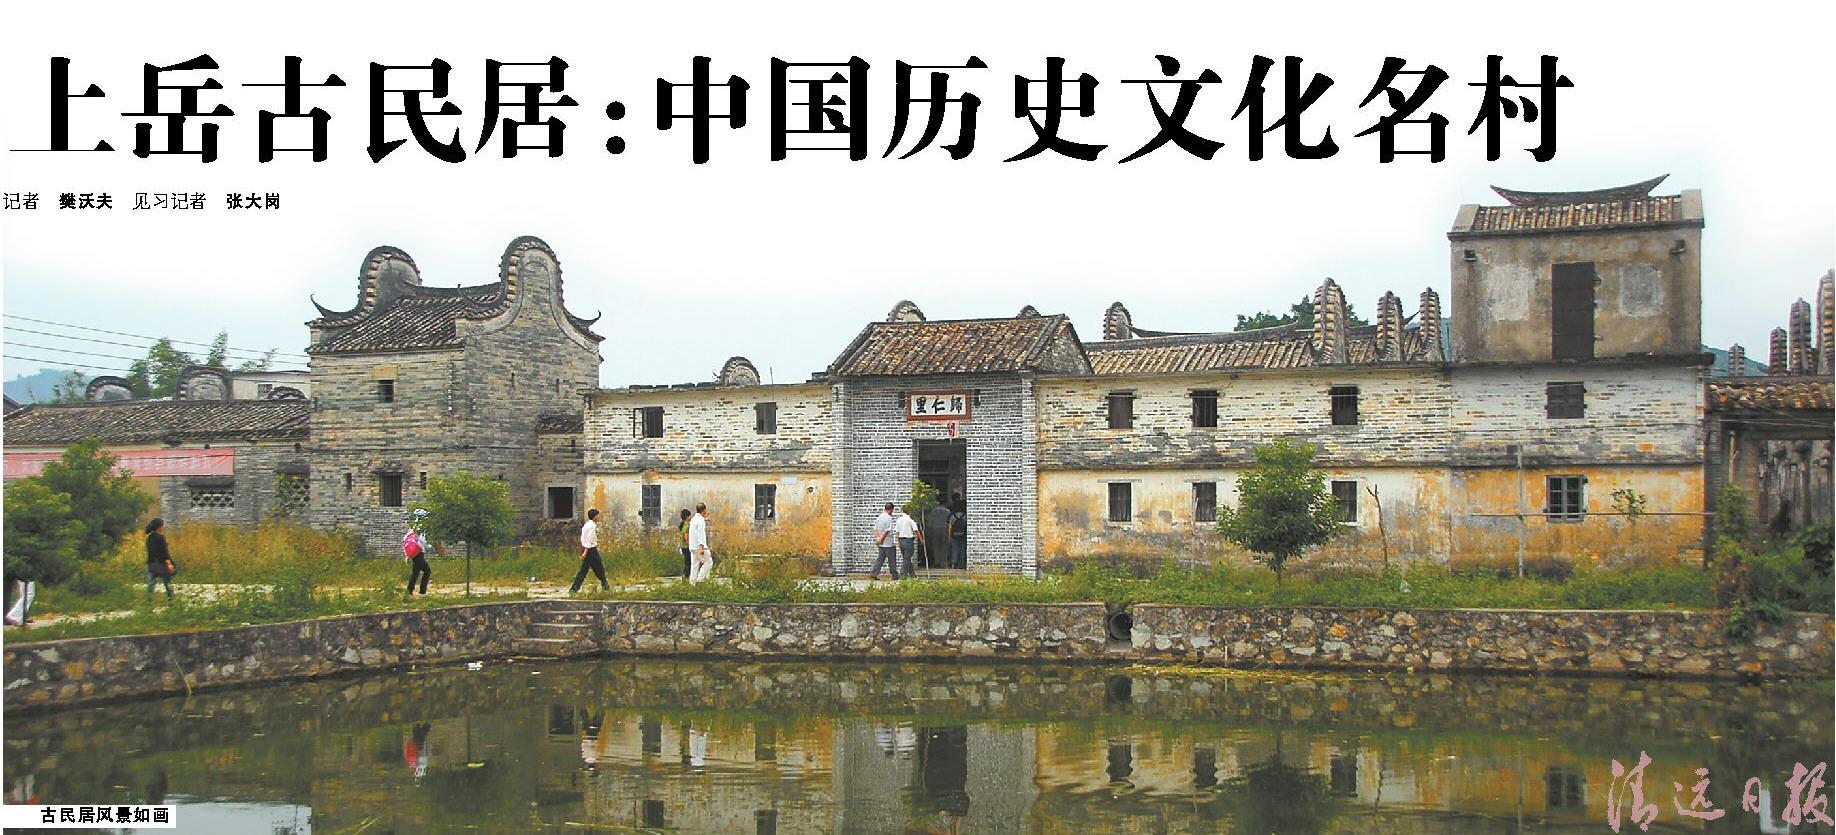 上岳古民居中國歷史文化名村